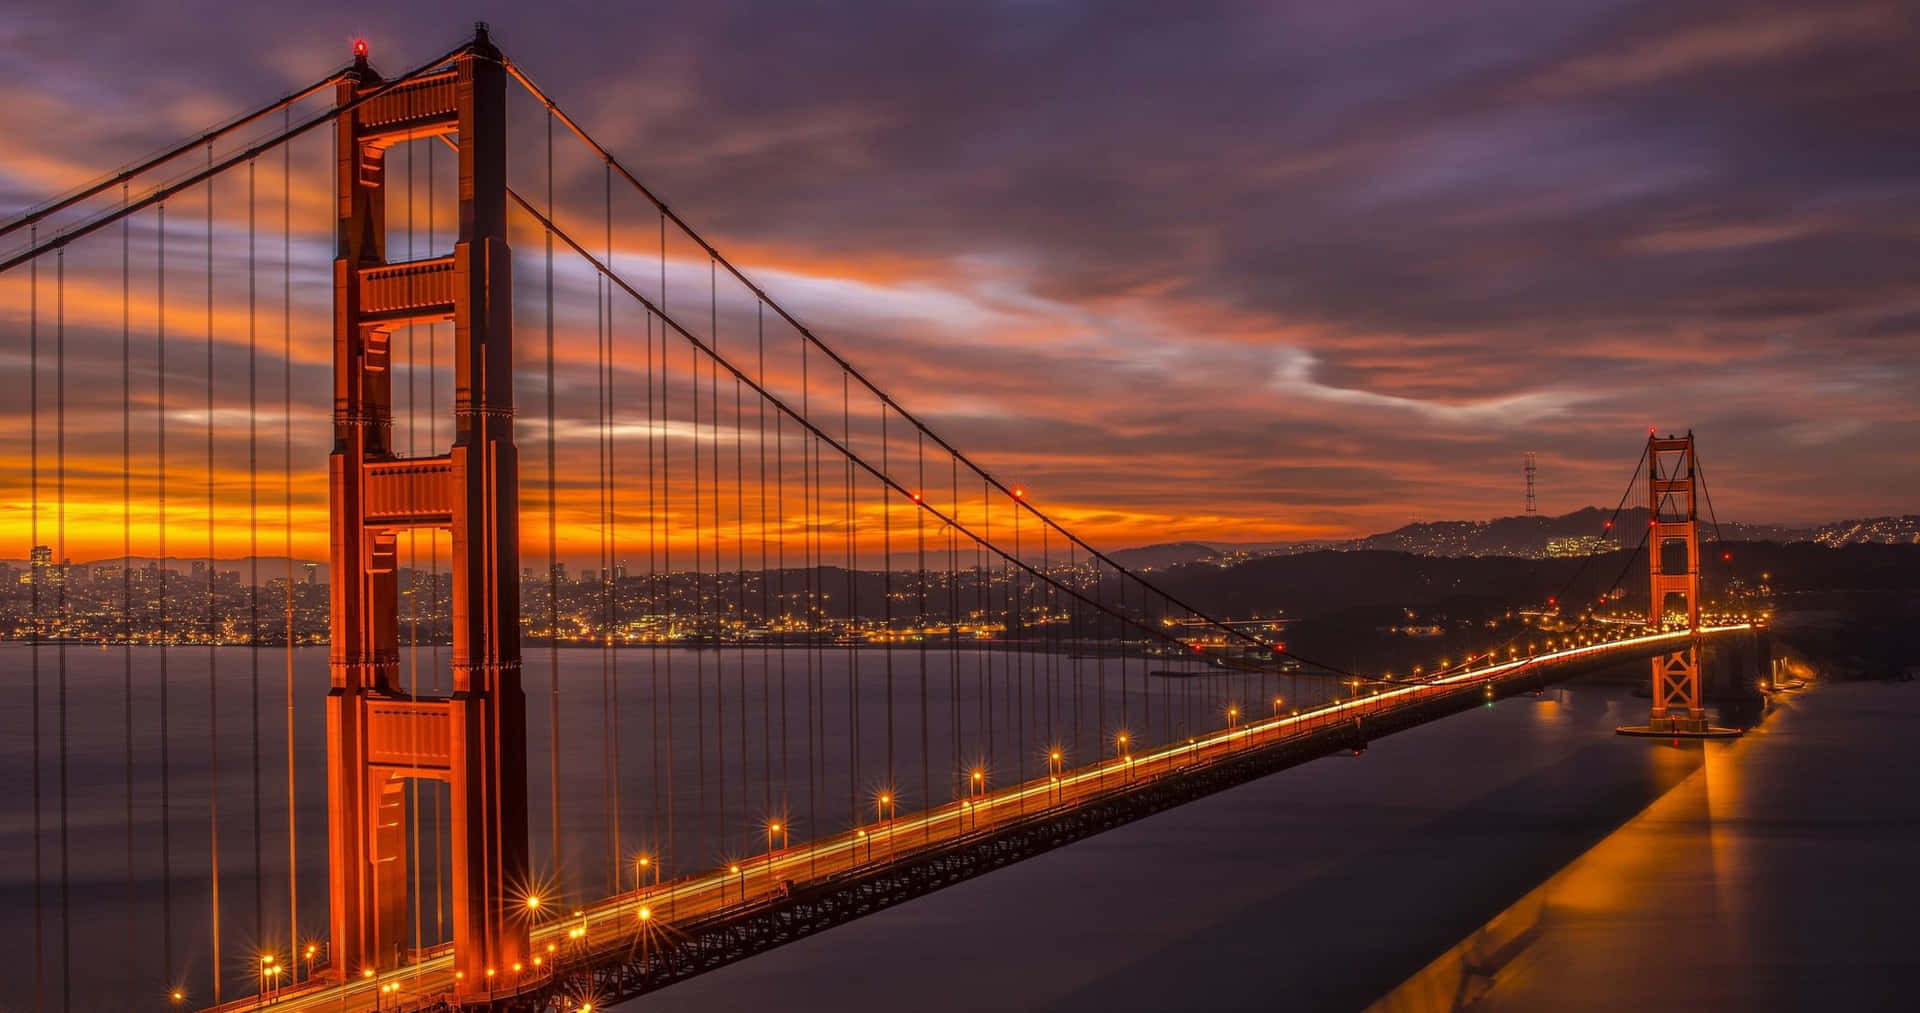 Elpuente Golden Gate Durante La Puesta De Sol, El Mejor Fondo De Pantalla De San Francisco.